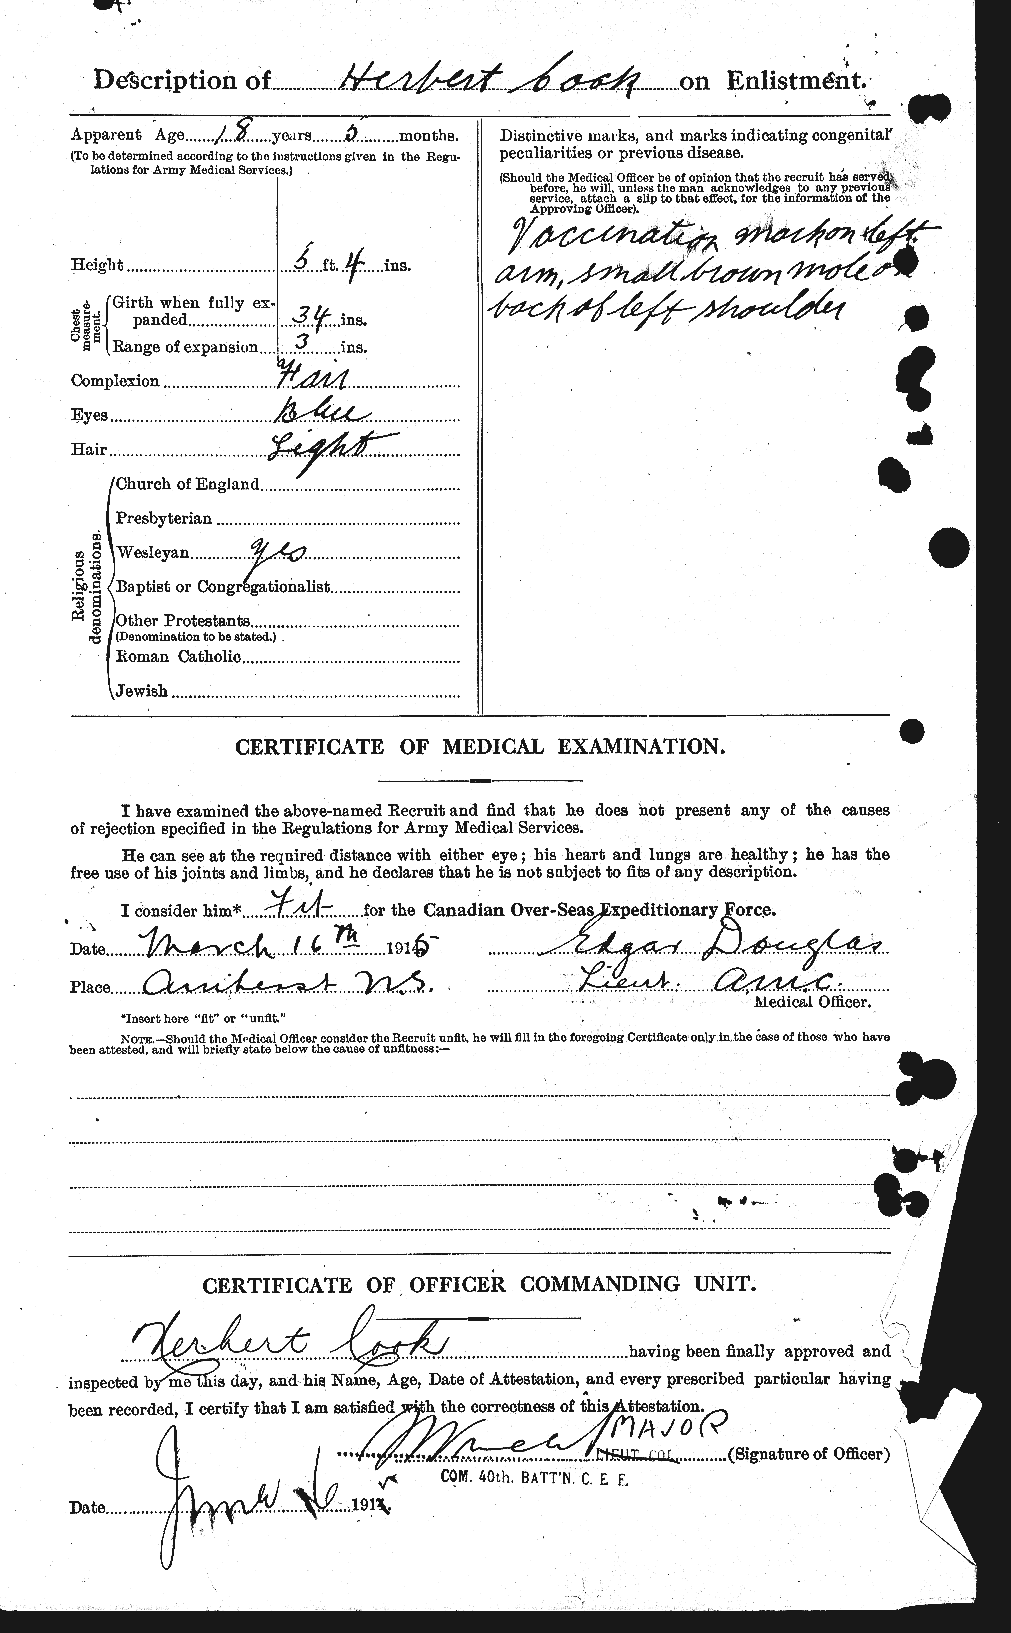 Dossiers du Personnel de la Première Guerre mondiale - CEC 073713b